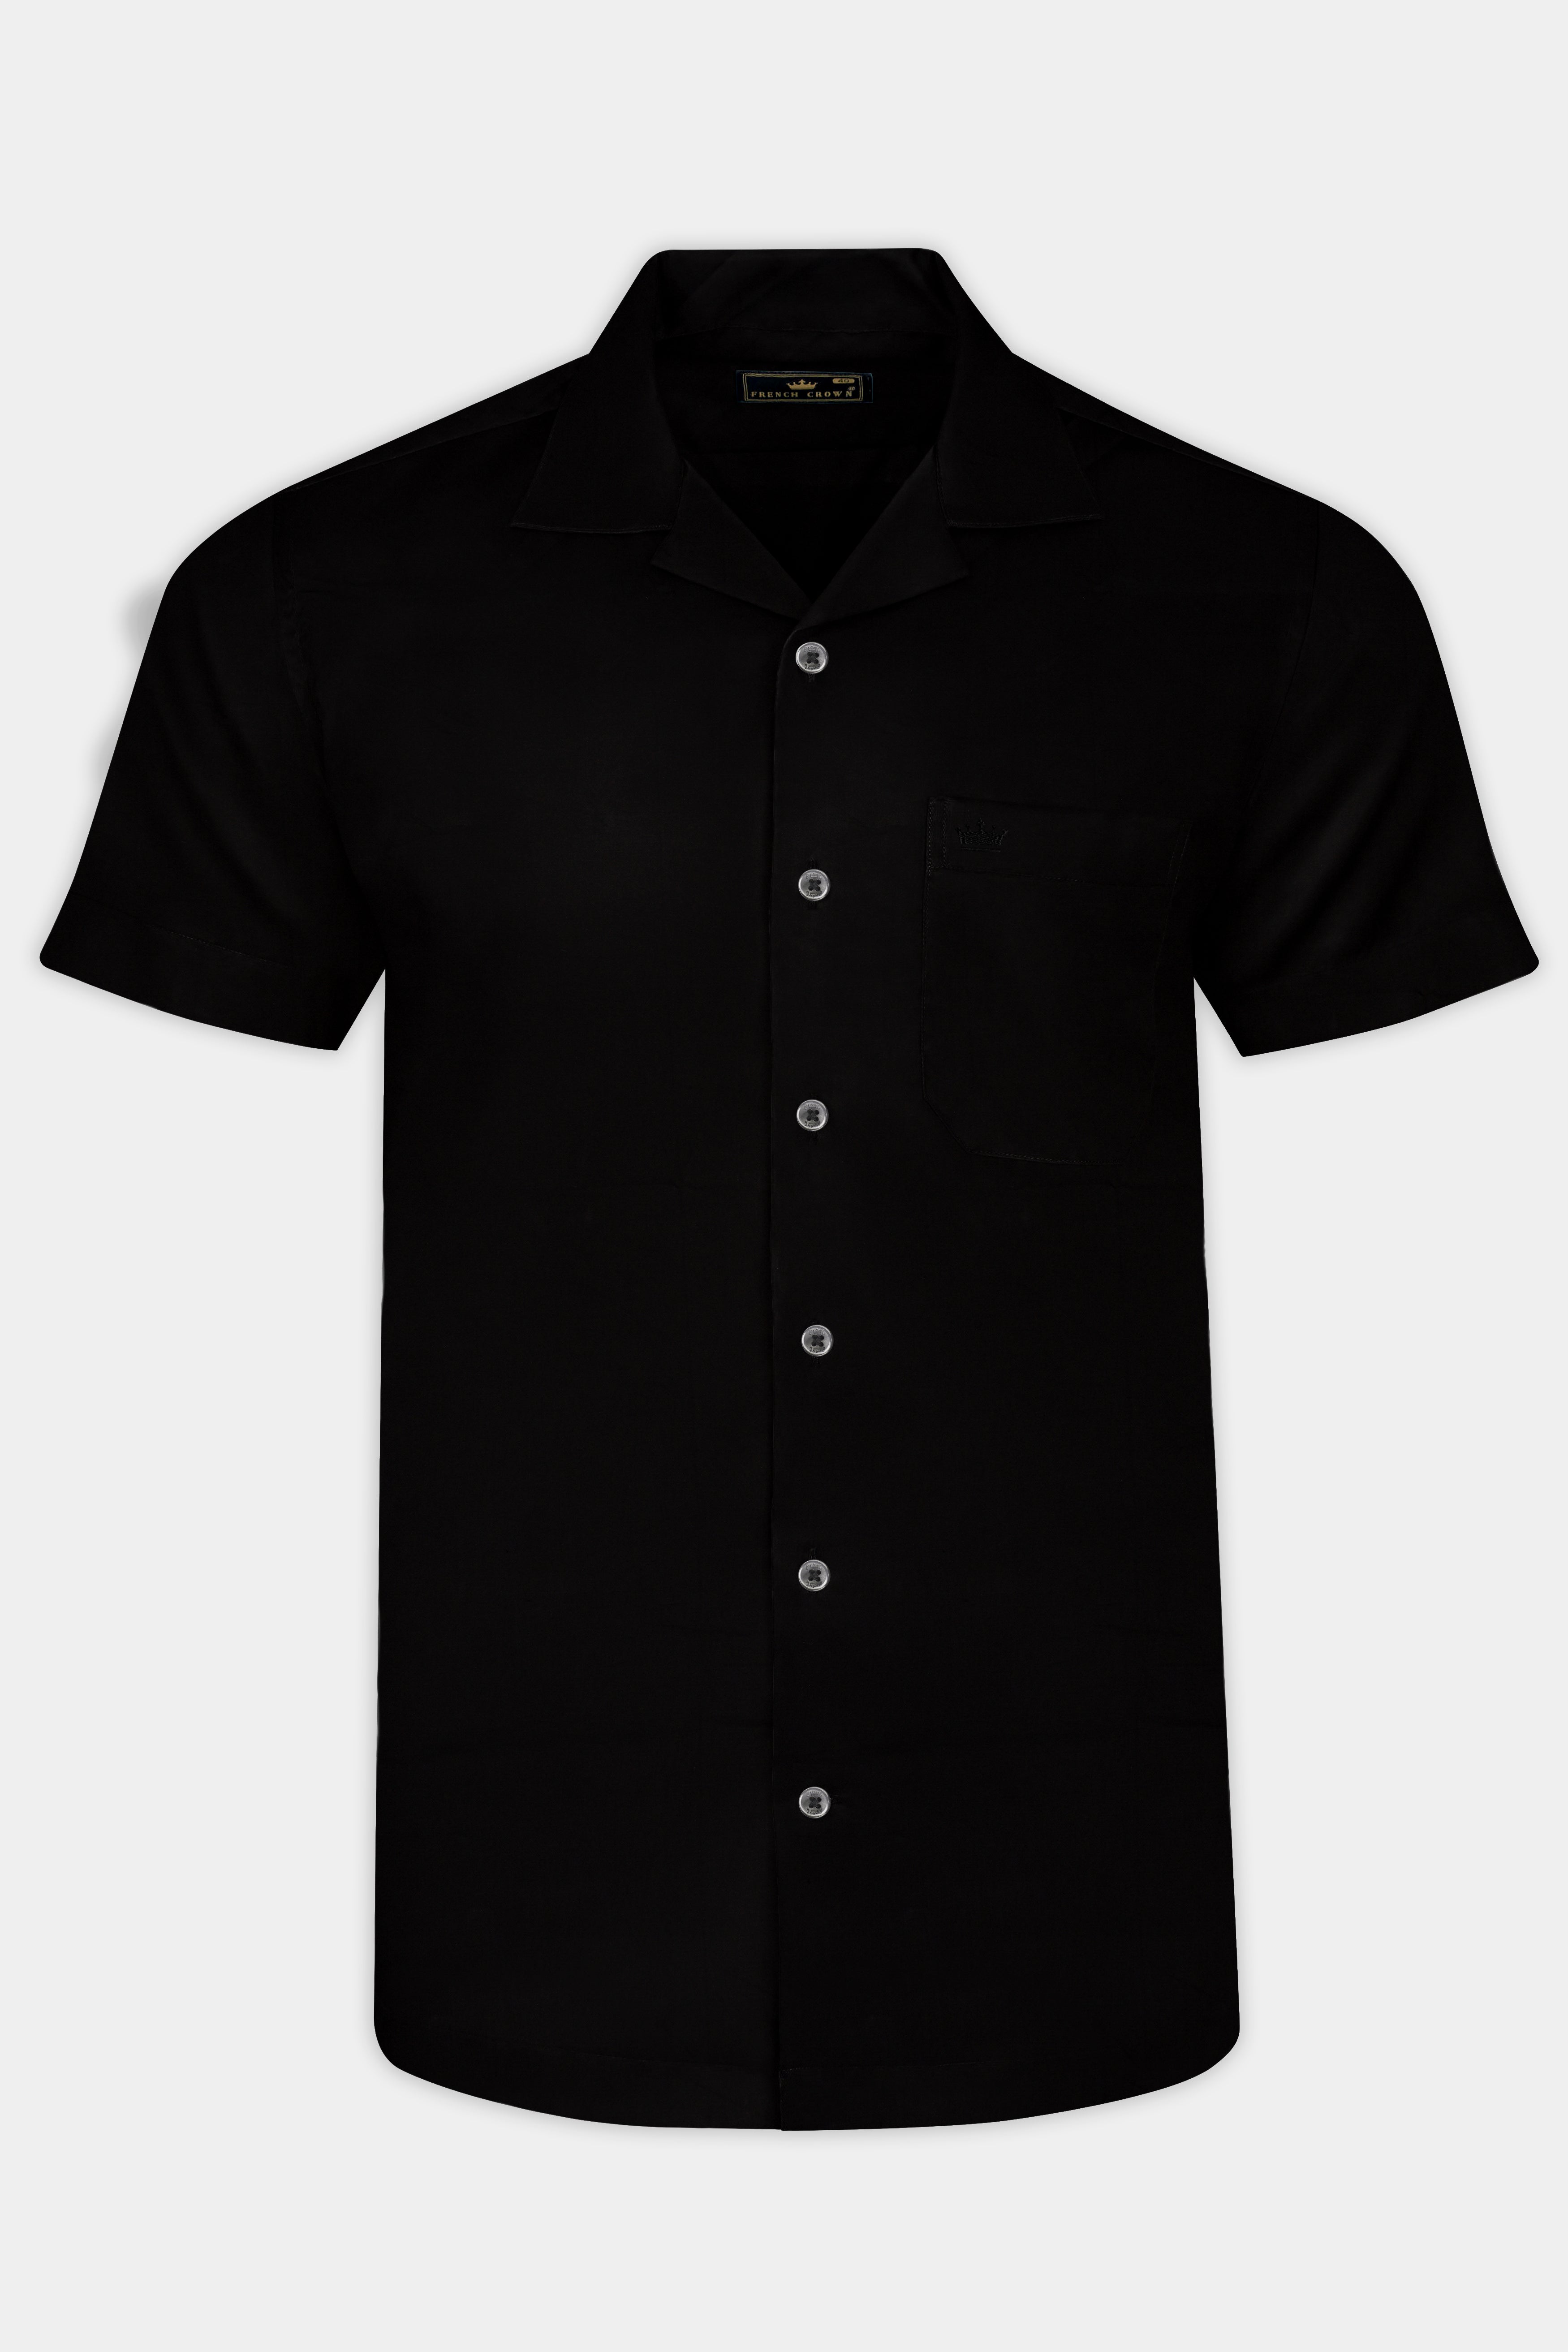 Jade Black Cuban Collar Super Soft Giza Cotton Shirt